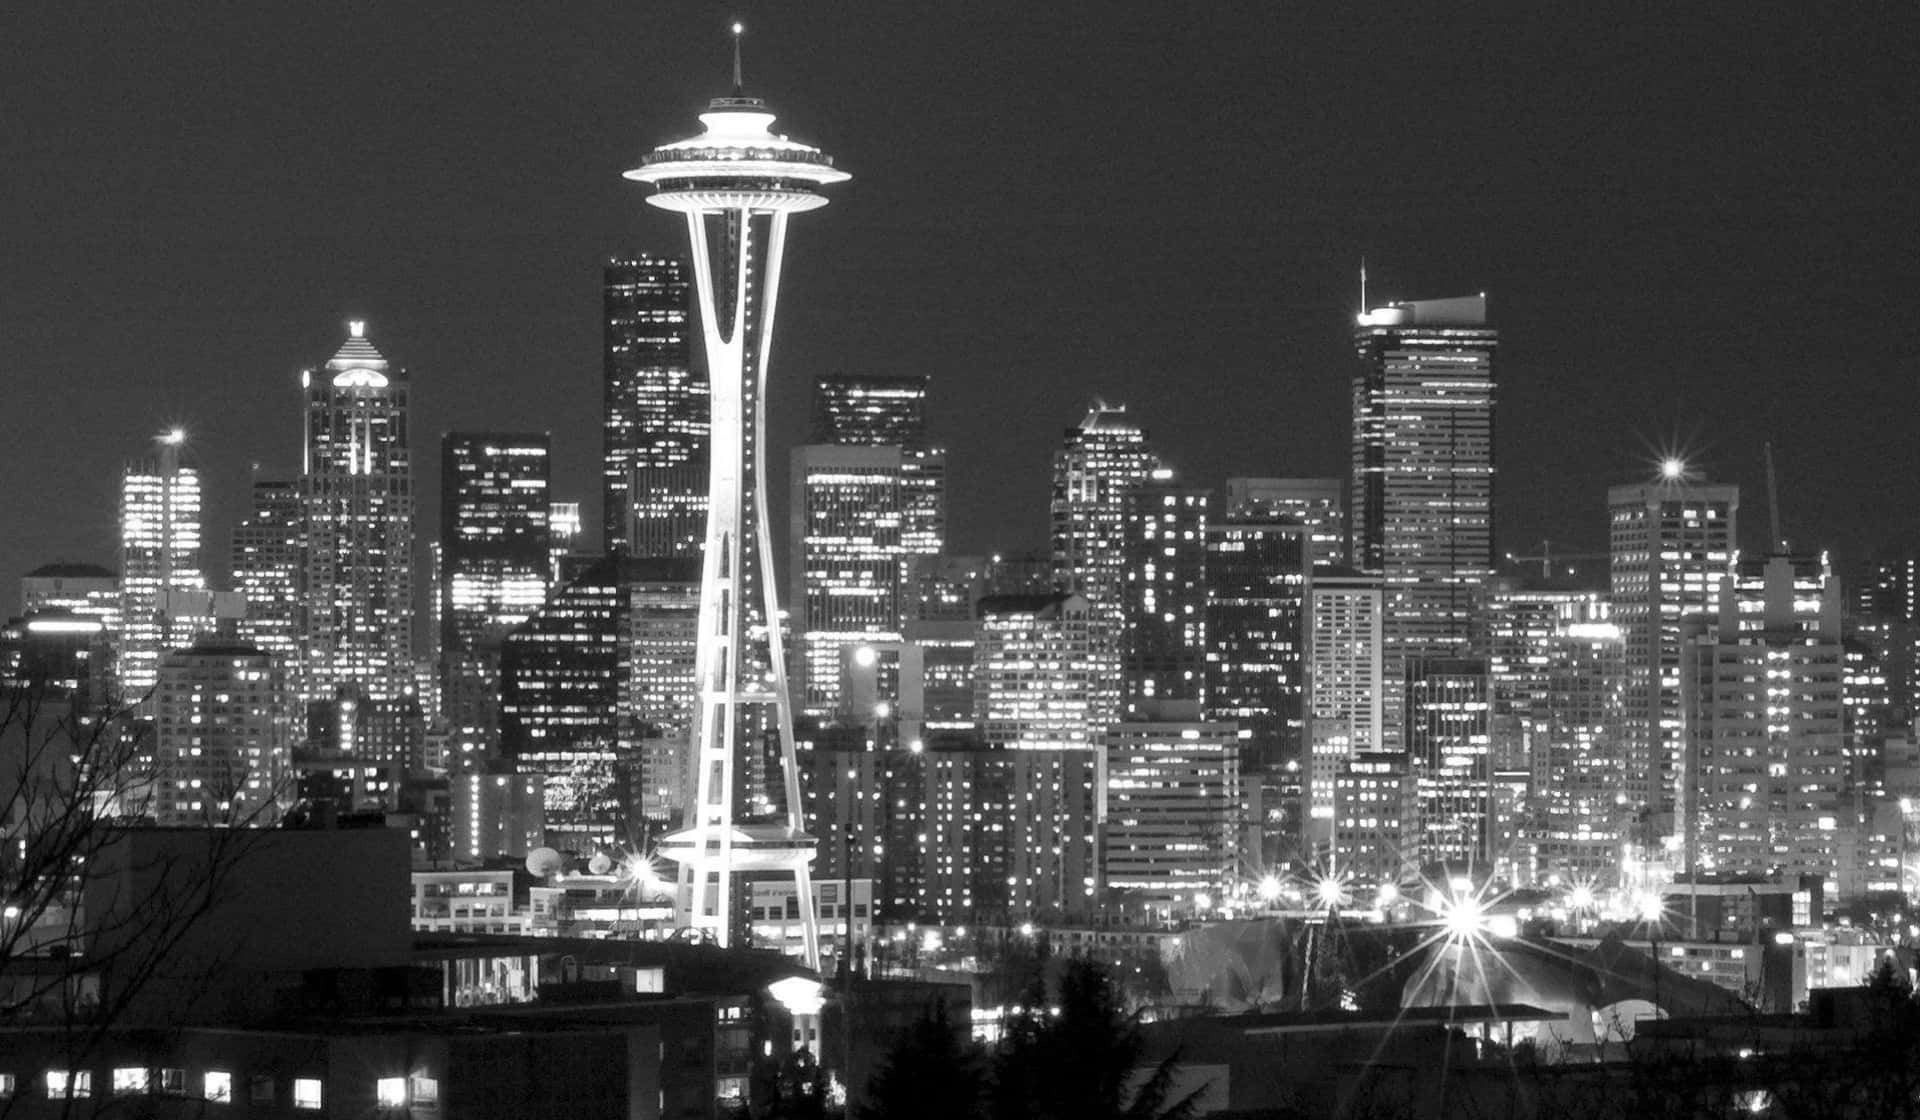 Laimpresionante Aguja Espacial De Seattle En Blanco Y Negro Con Un Brillo Resplandeciente. Fondo de pantalla